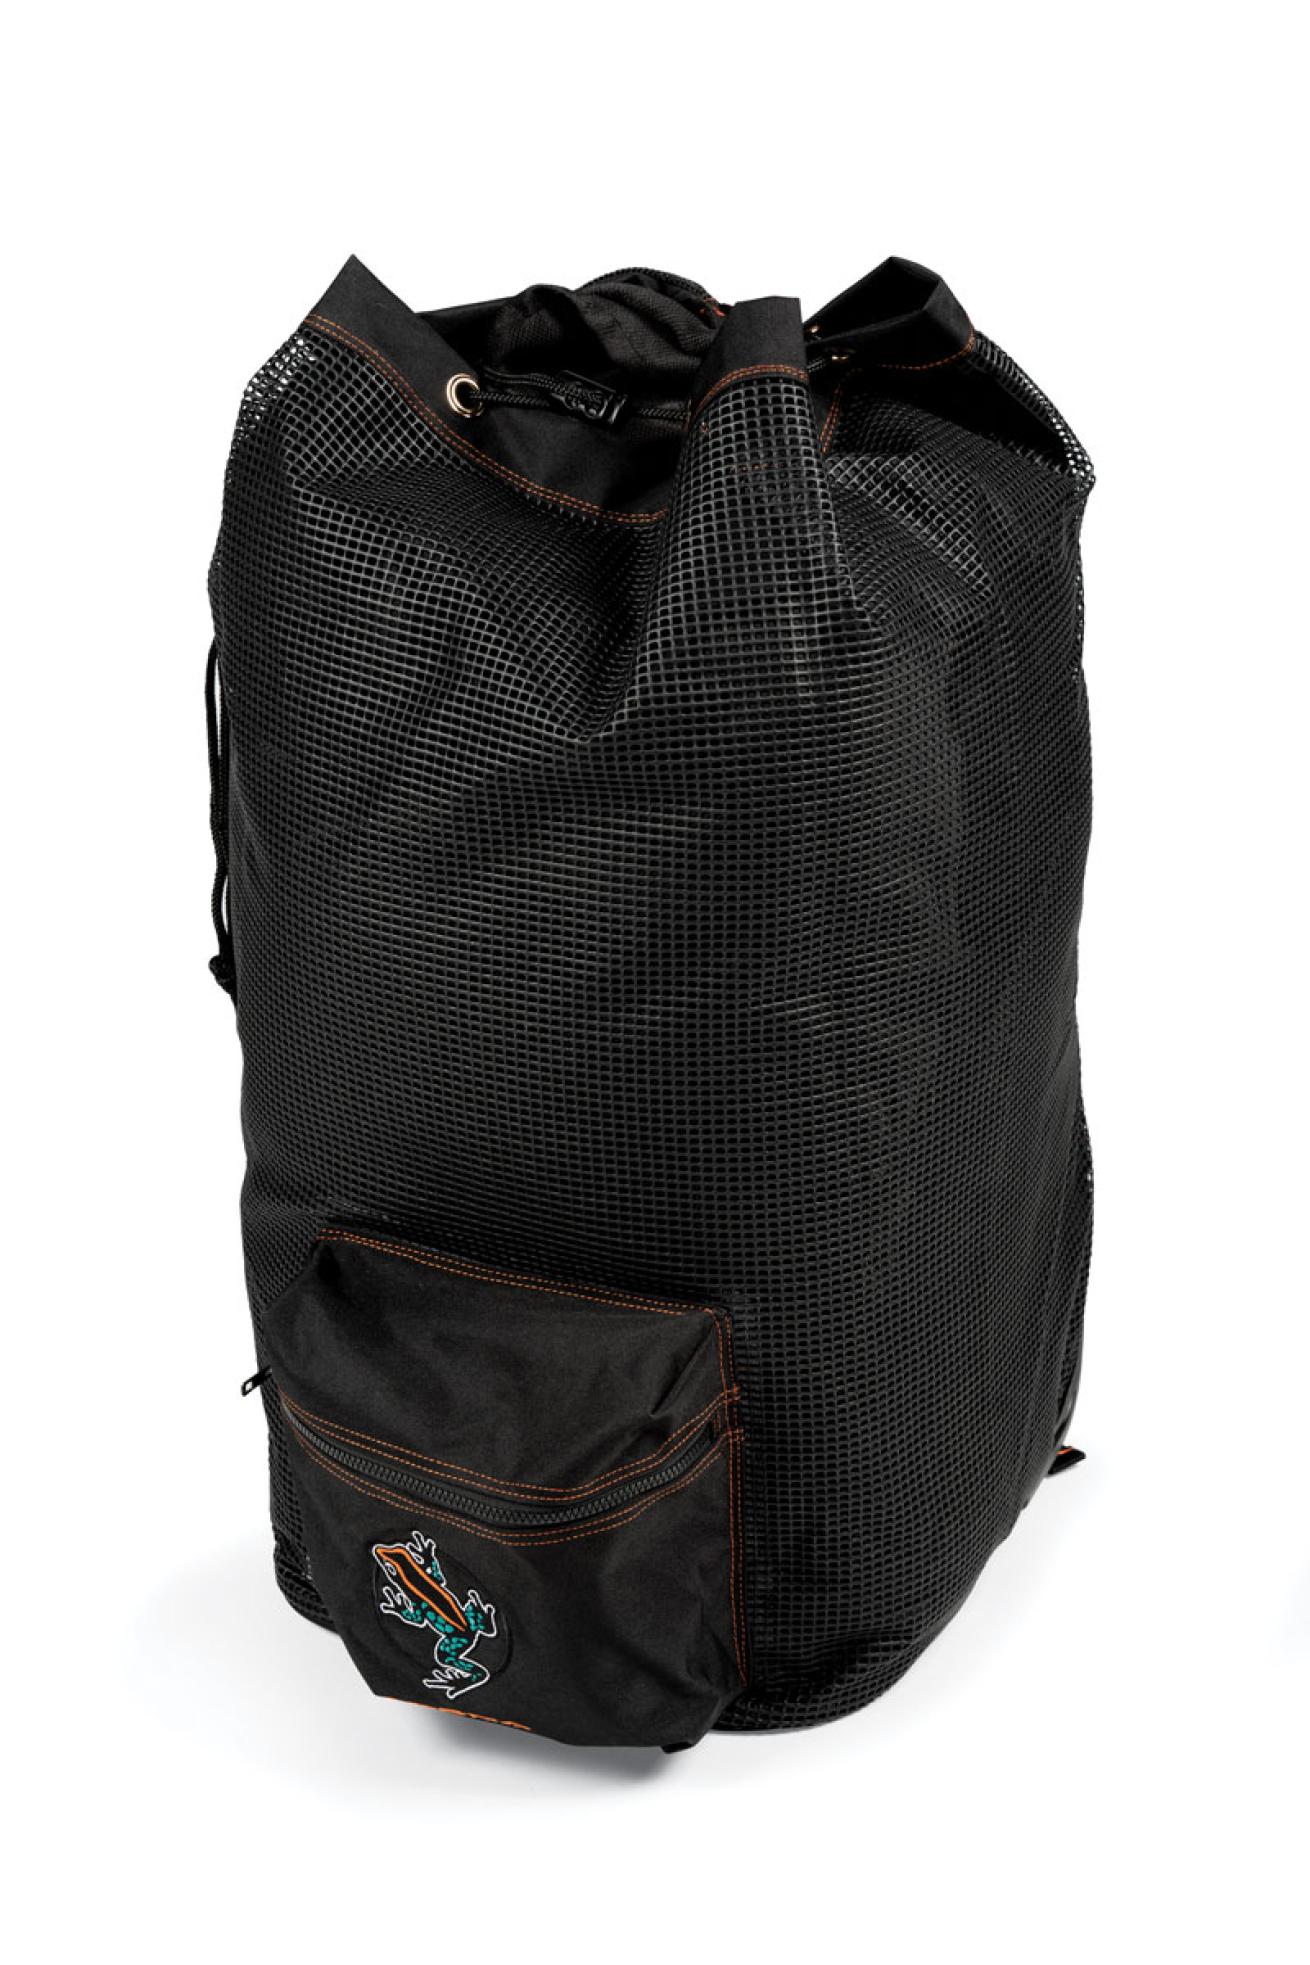 Akoona Georgian Mesh Roller Backpack